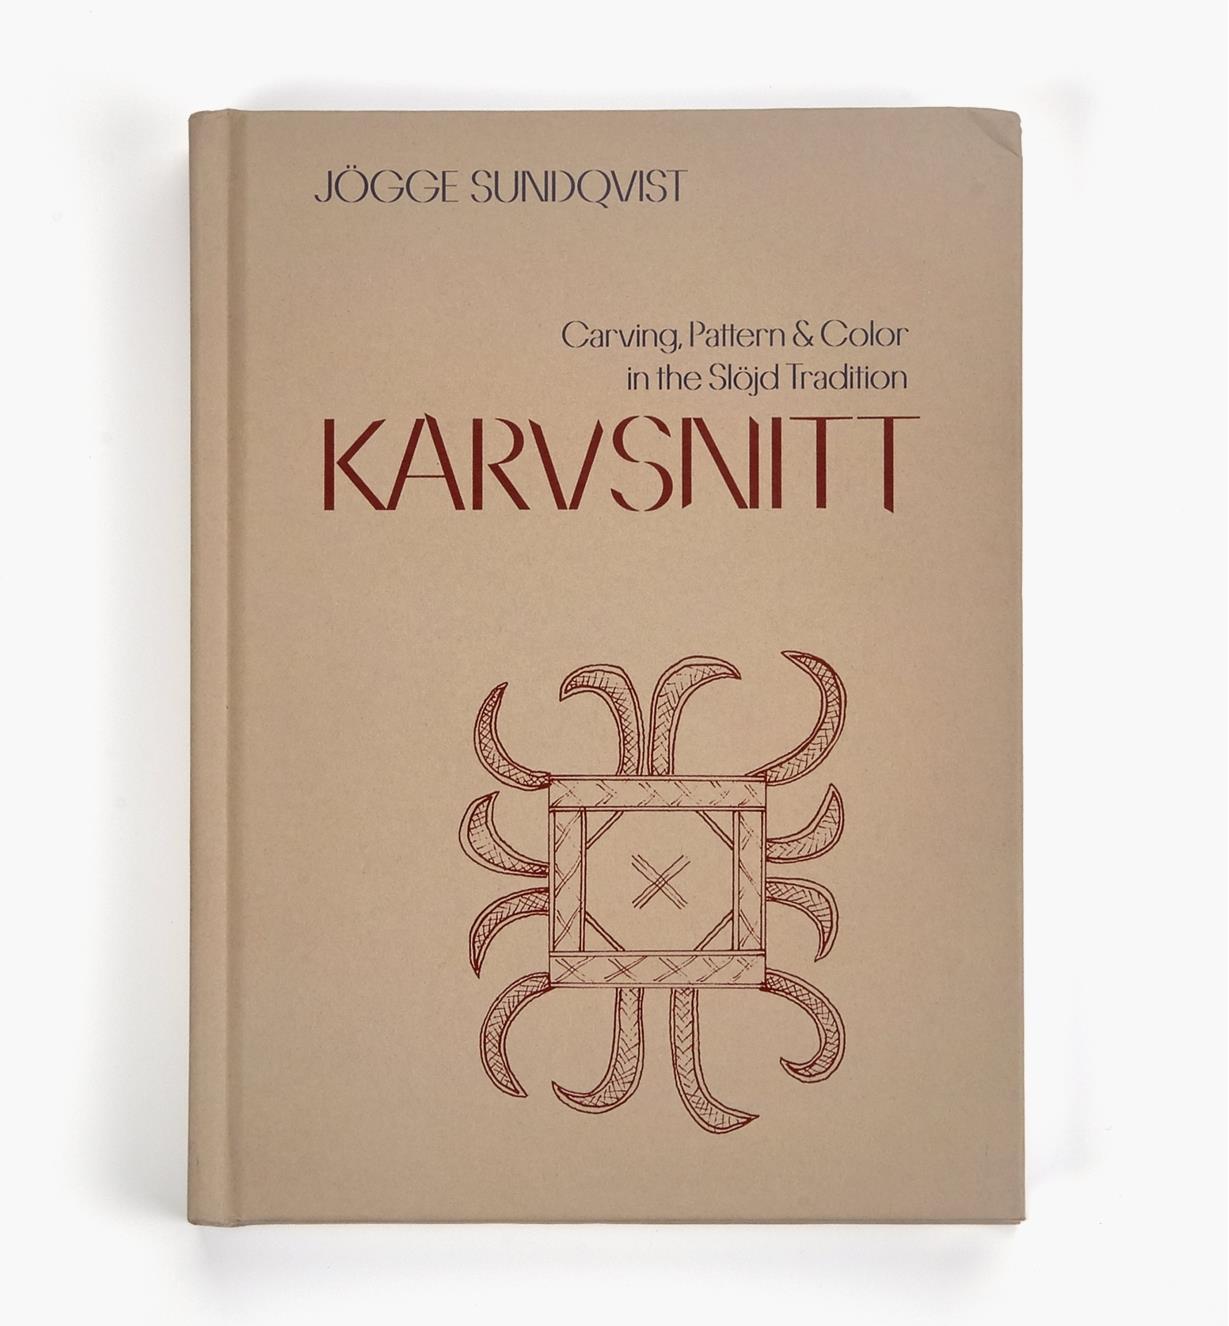 26L0237 - Karvsnitt – Carving, Pattern & Color in the Slöjd Tradition